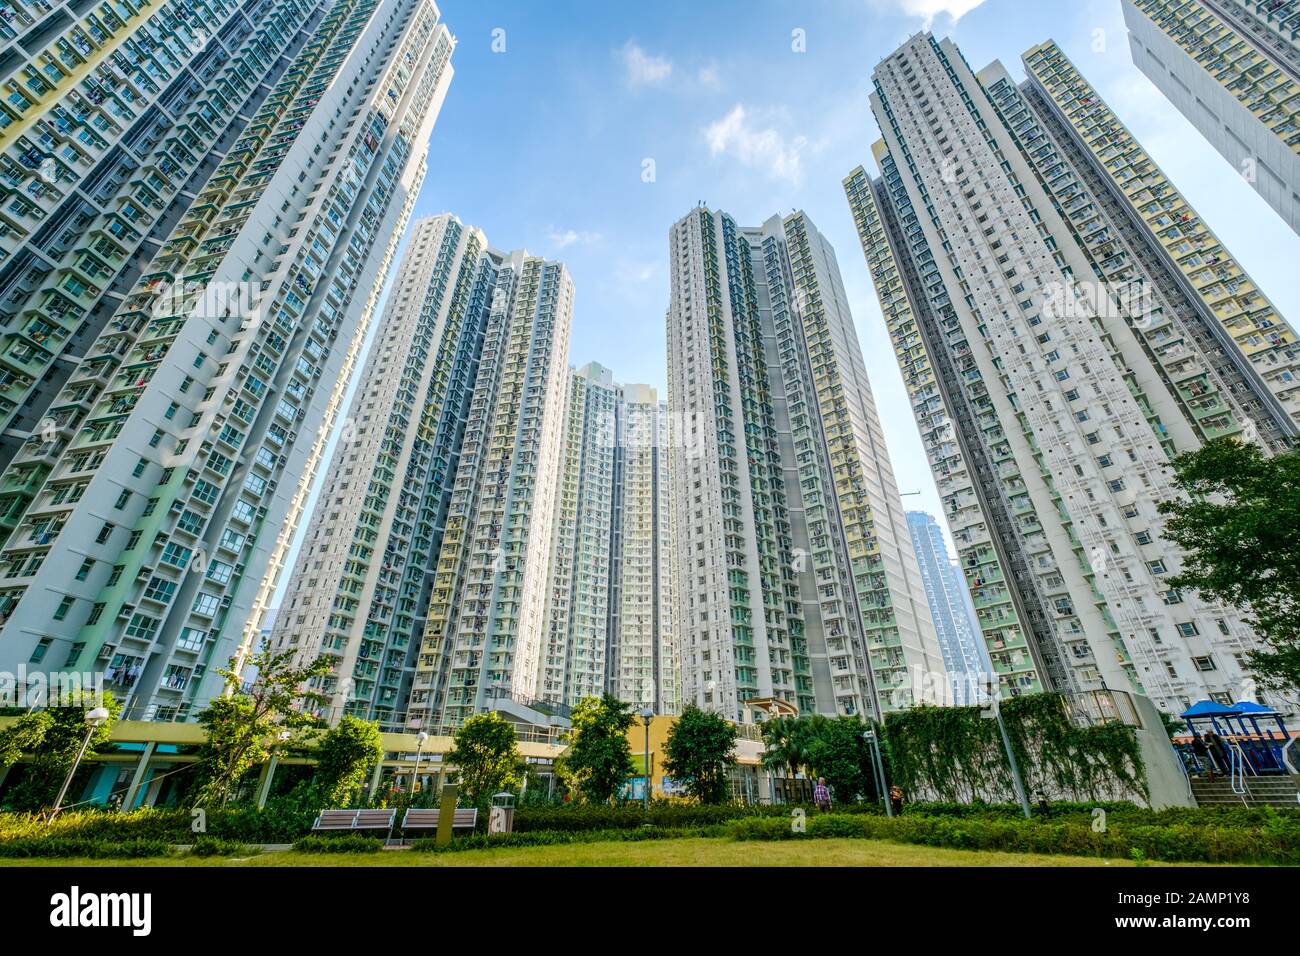 enorme complesso residenziale, campo verde tra alti edifici di appartamenti - Foto Stock